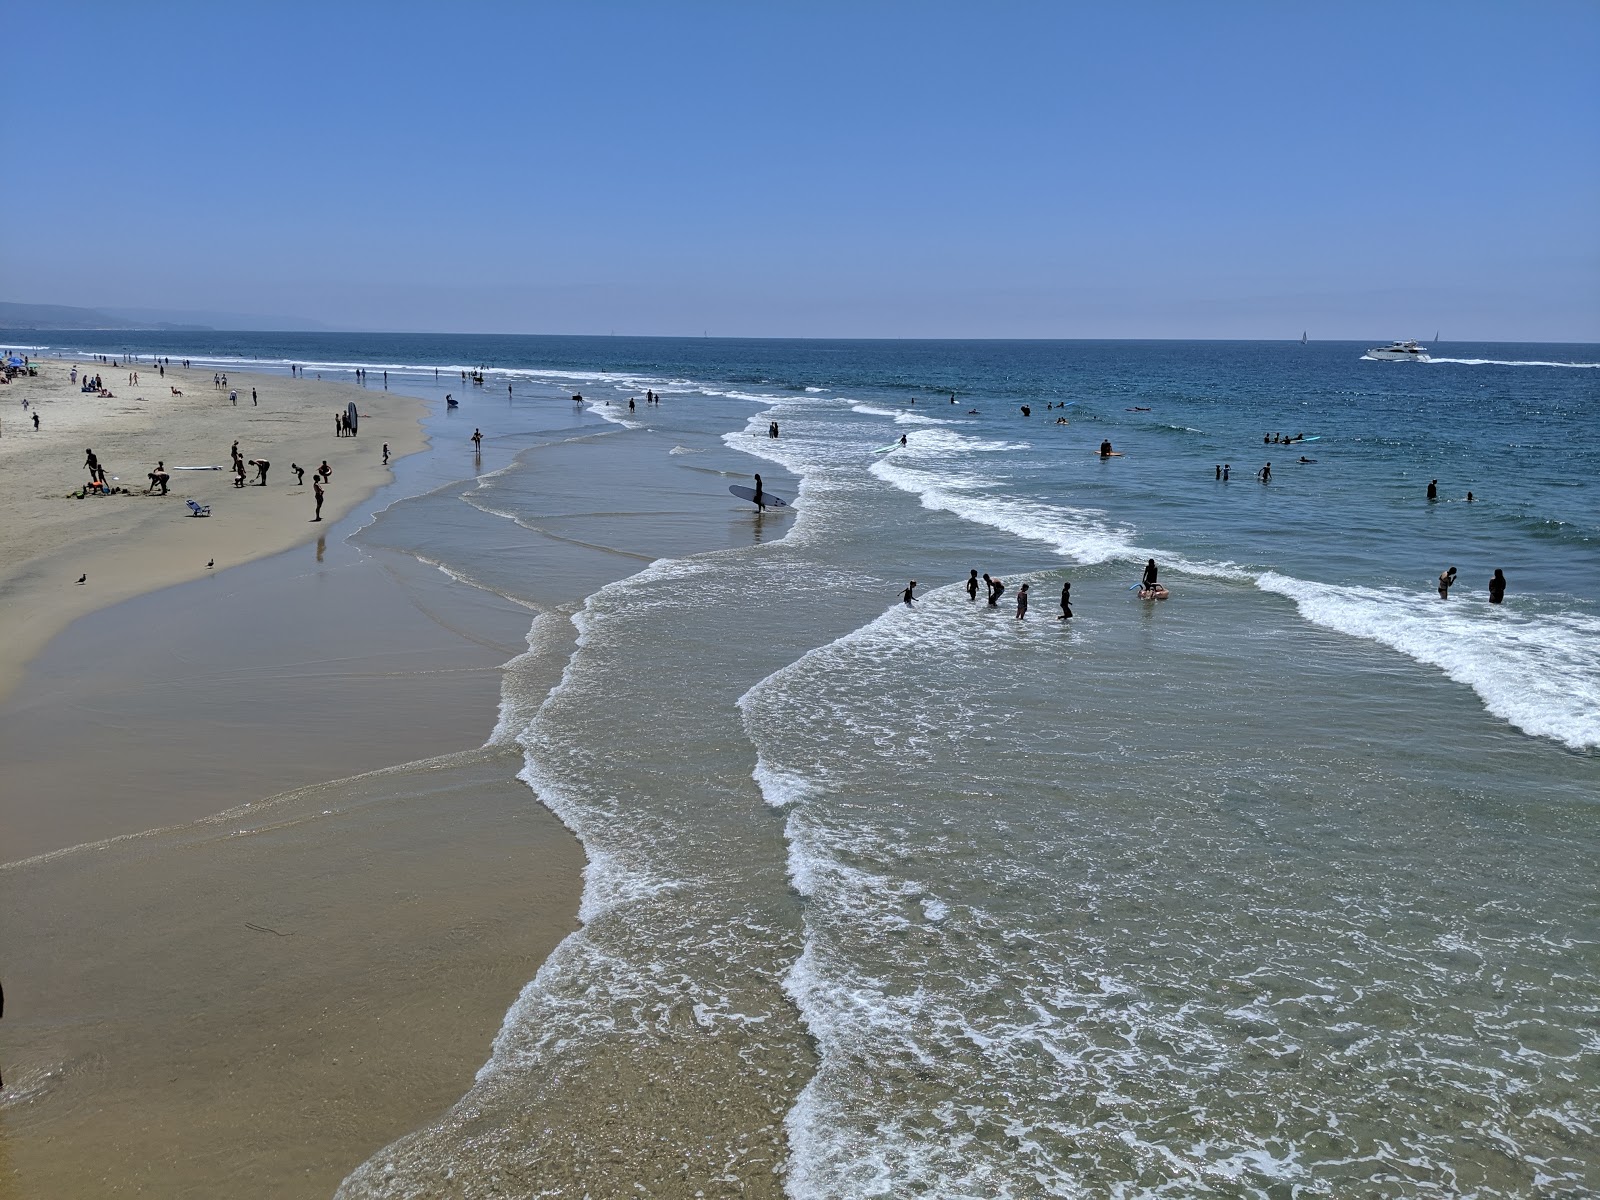 Newport Beach'in fotoğrafı parlak kum yüzey ile